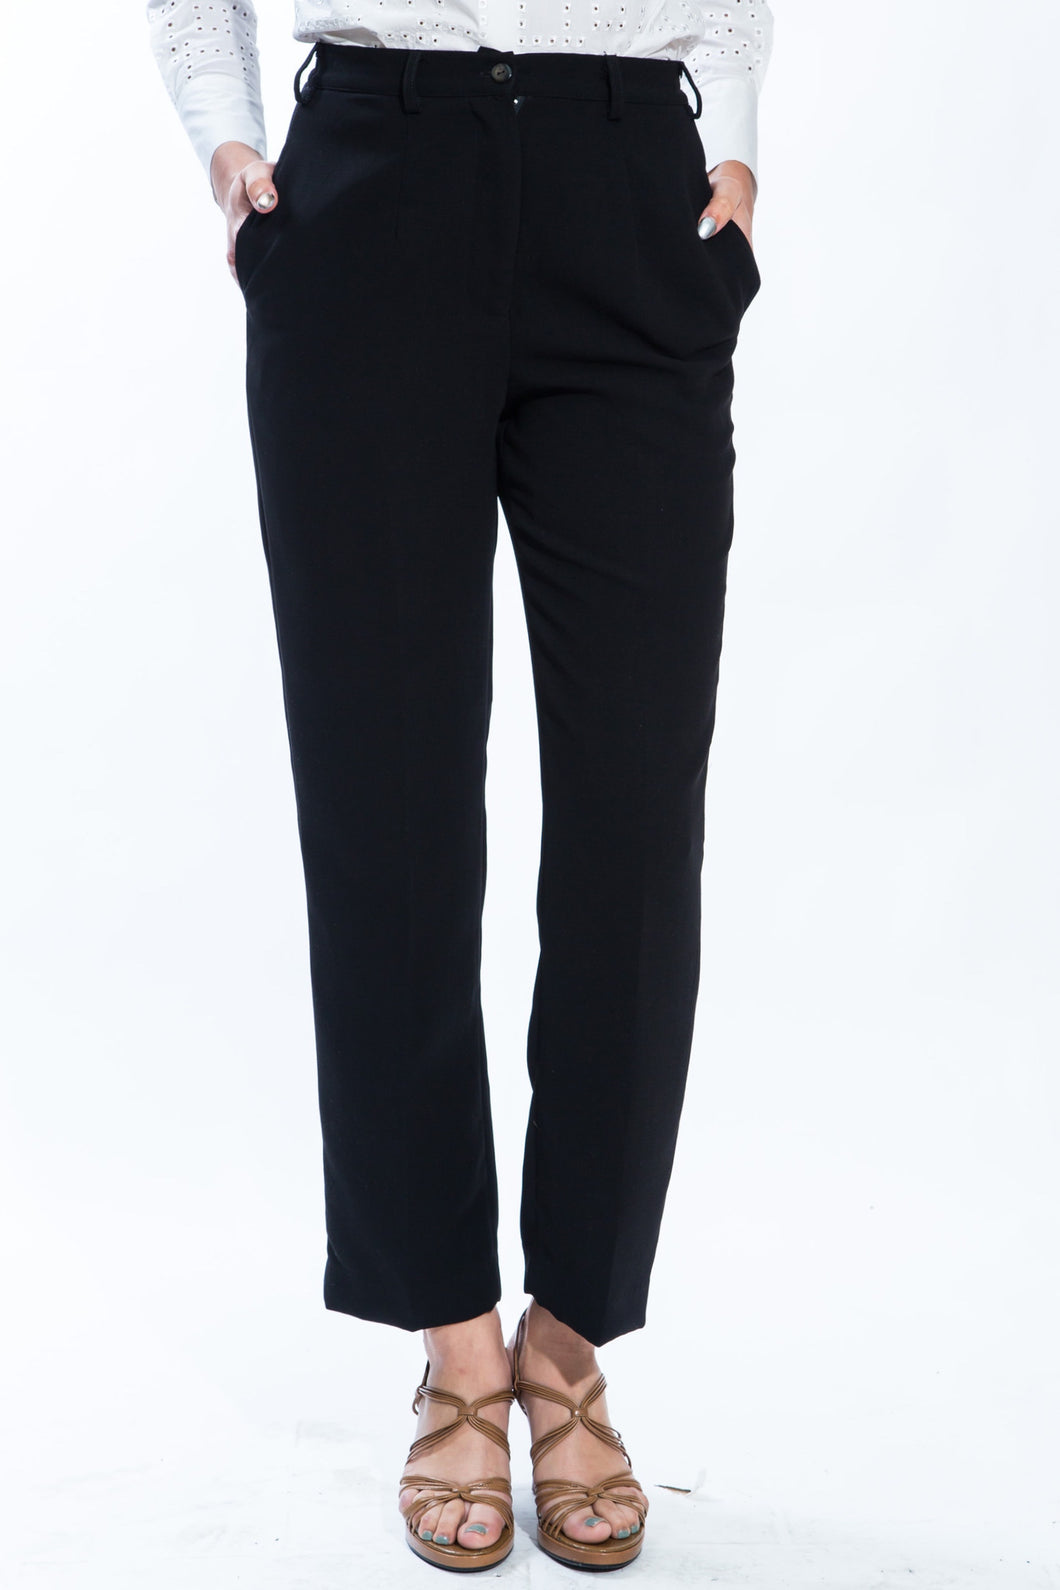 Black Comfy Pants Style 3720P